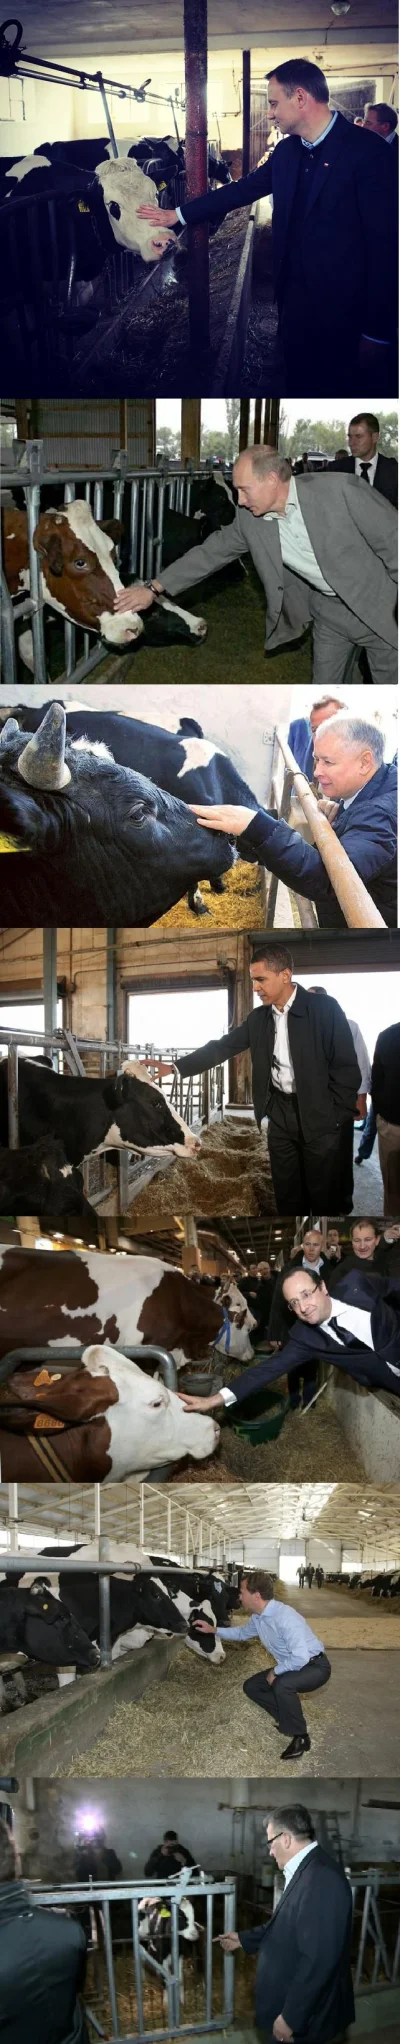 zloty_wkret - Komorowski - robisz to źle.
#krowy #politycy #obama